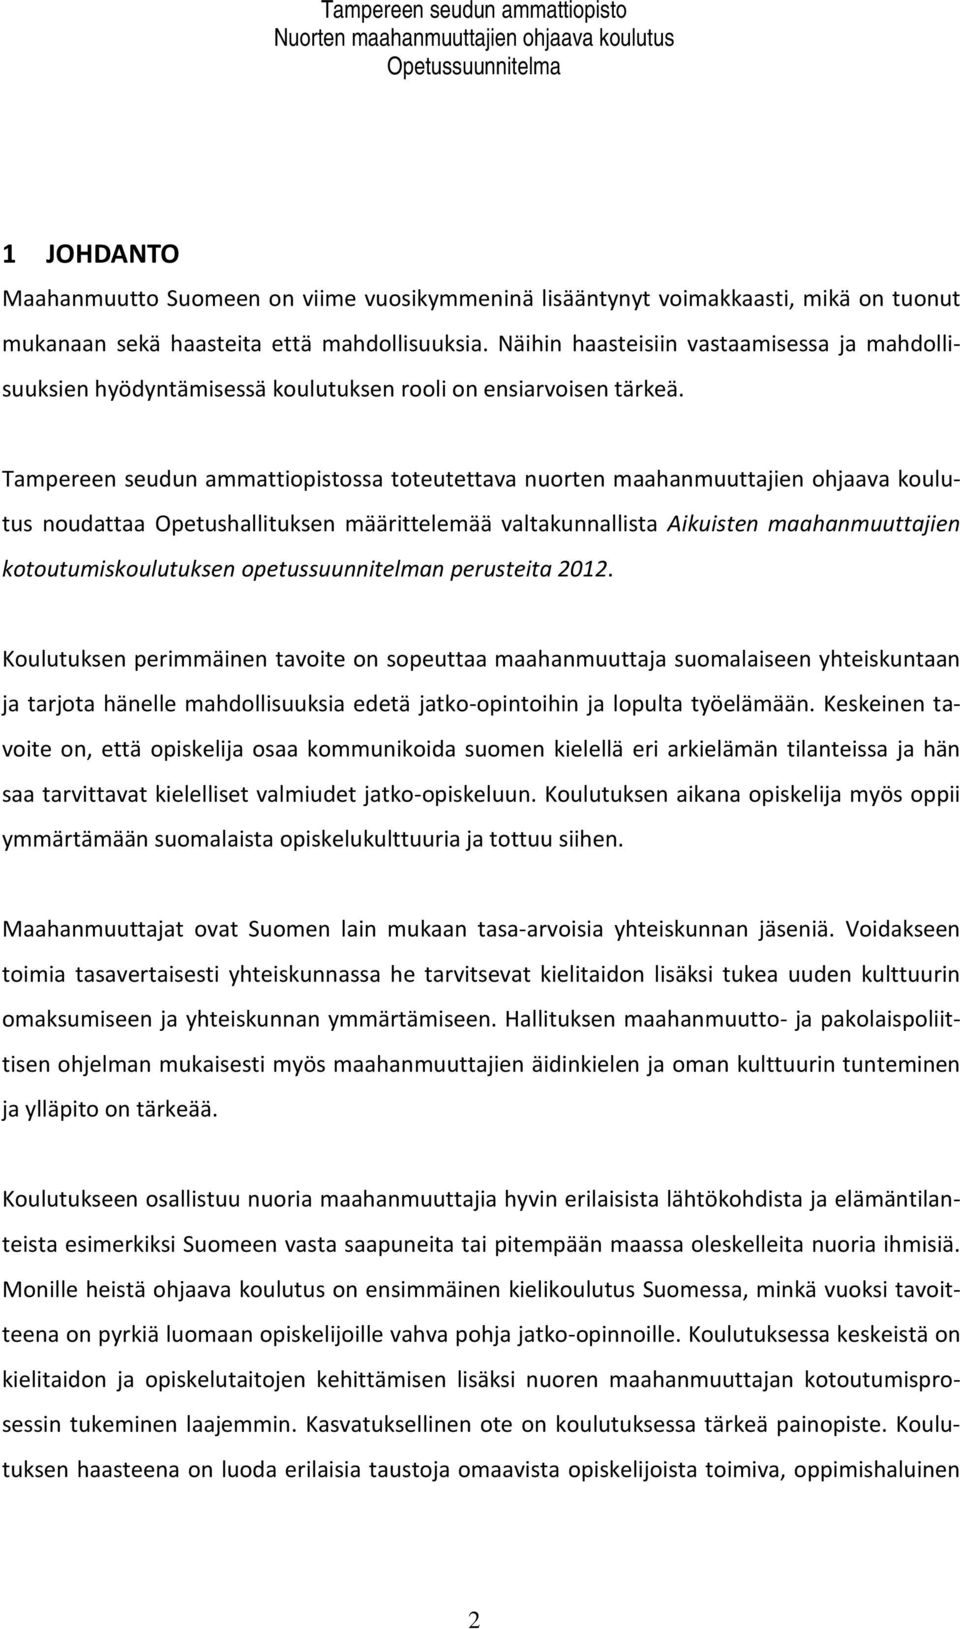 Tampereen seudun ammattiopistossa toteutettava nuorten maahanmuuttajien ohjaava koulutus noudattaa Opetushallituksen määrittelemää valtakunnallista Aikuisten maahanmuuttajien kotoutumiskoulutuksen